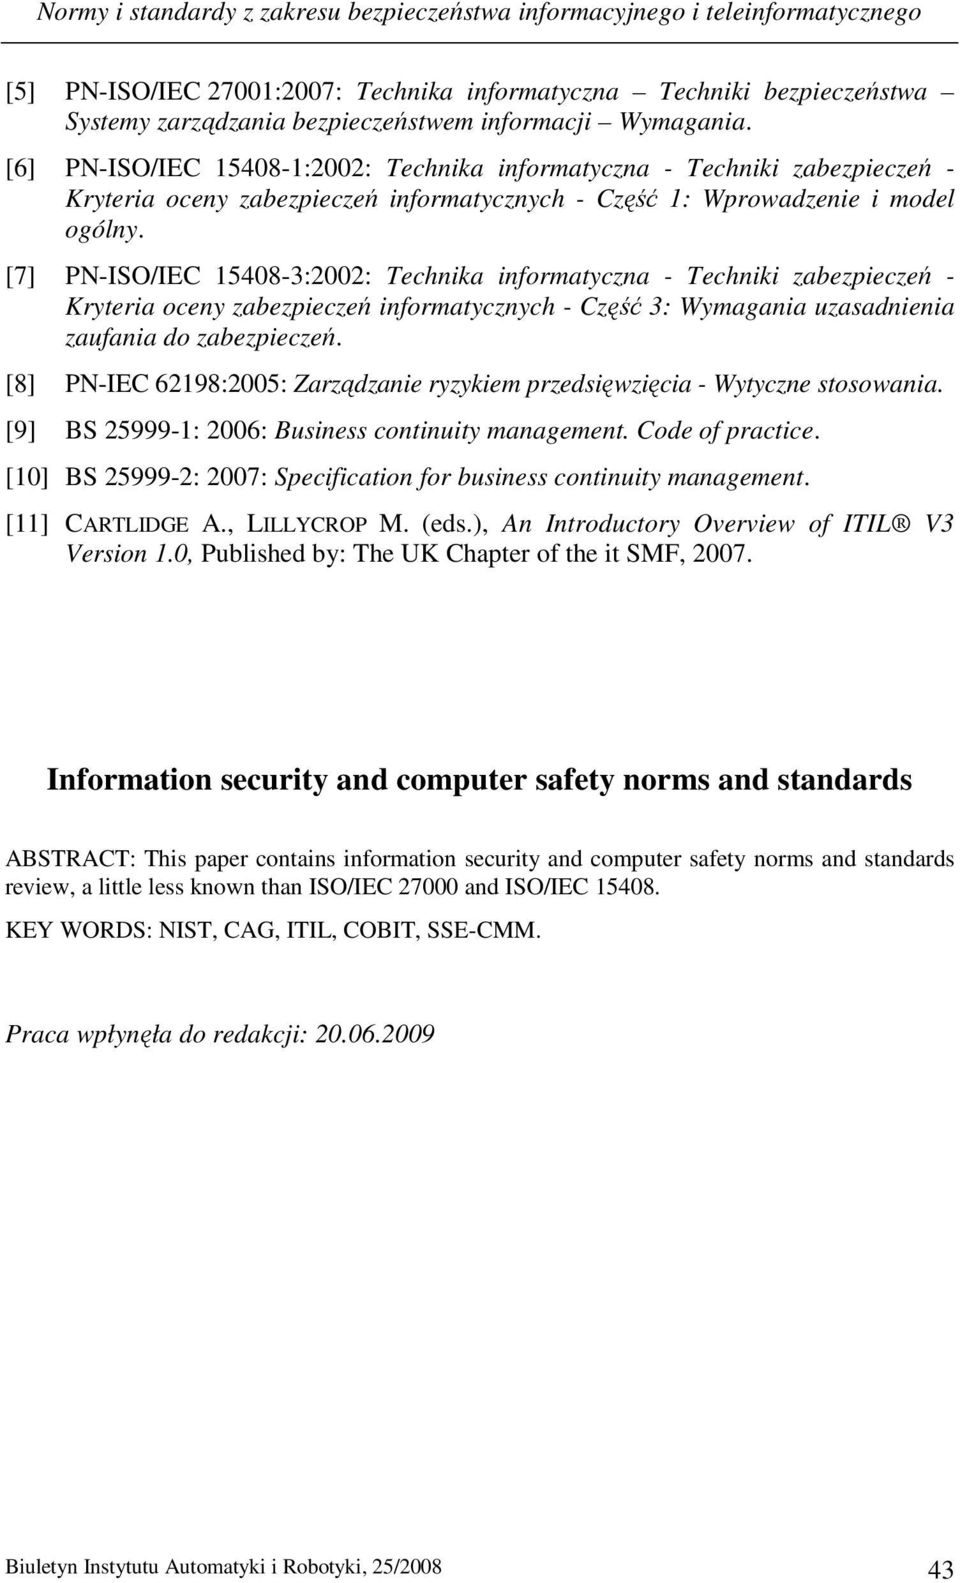 [7] PN-ISO/IEC 15408-3:2002: Technika informatyczna - Techniki zabezpieczeń - Kryteria oceny zabezpieczeń informatycznych - Część 3: Wymagania uzasadnienia zaufania do zabezpieczeń.